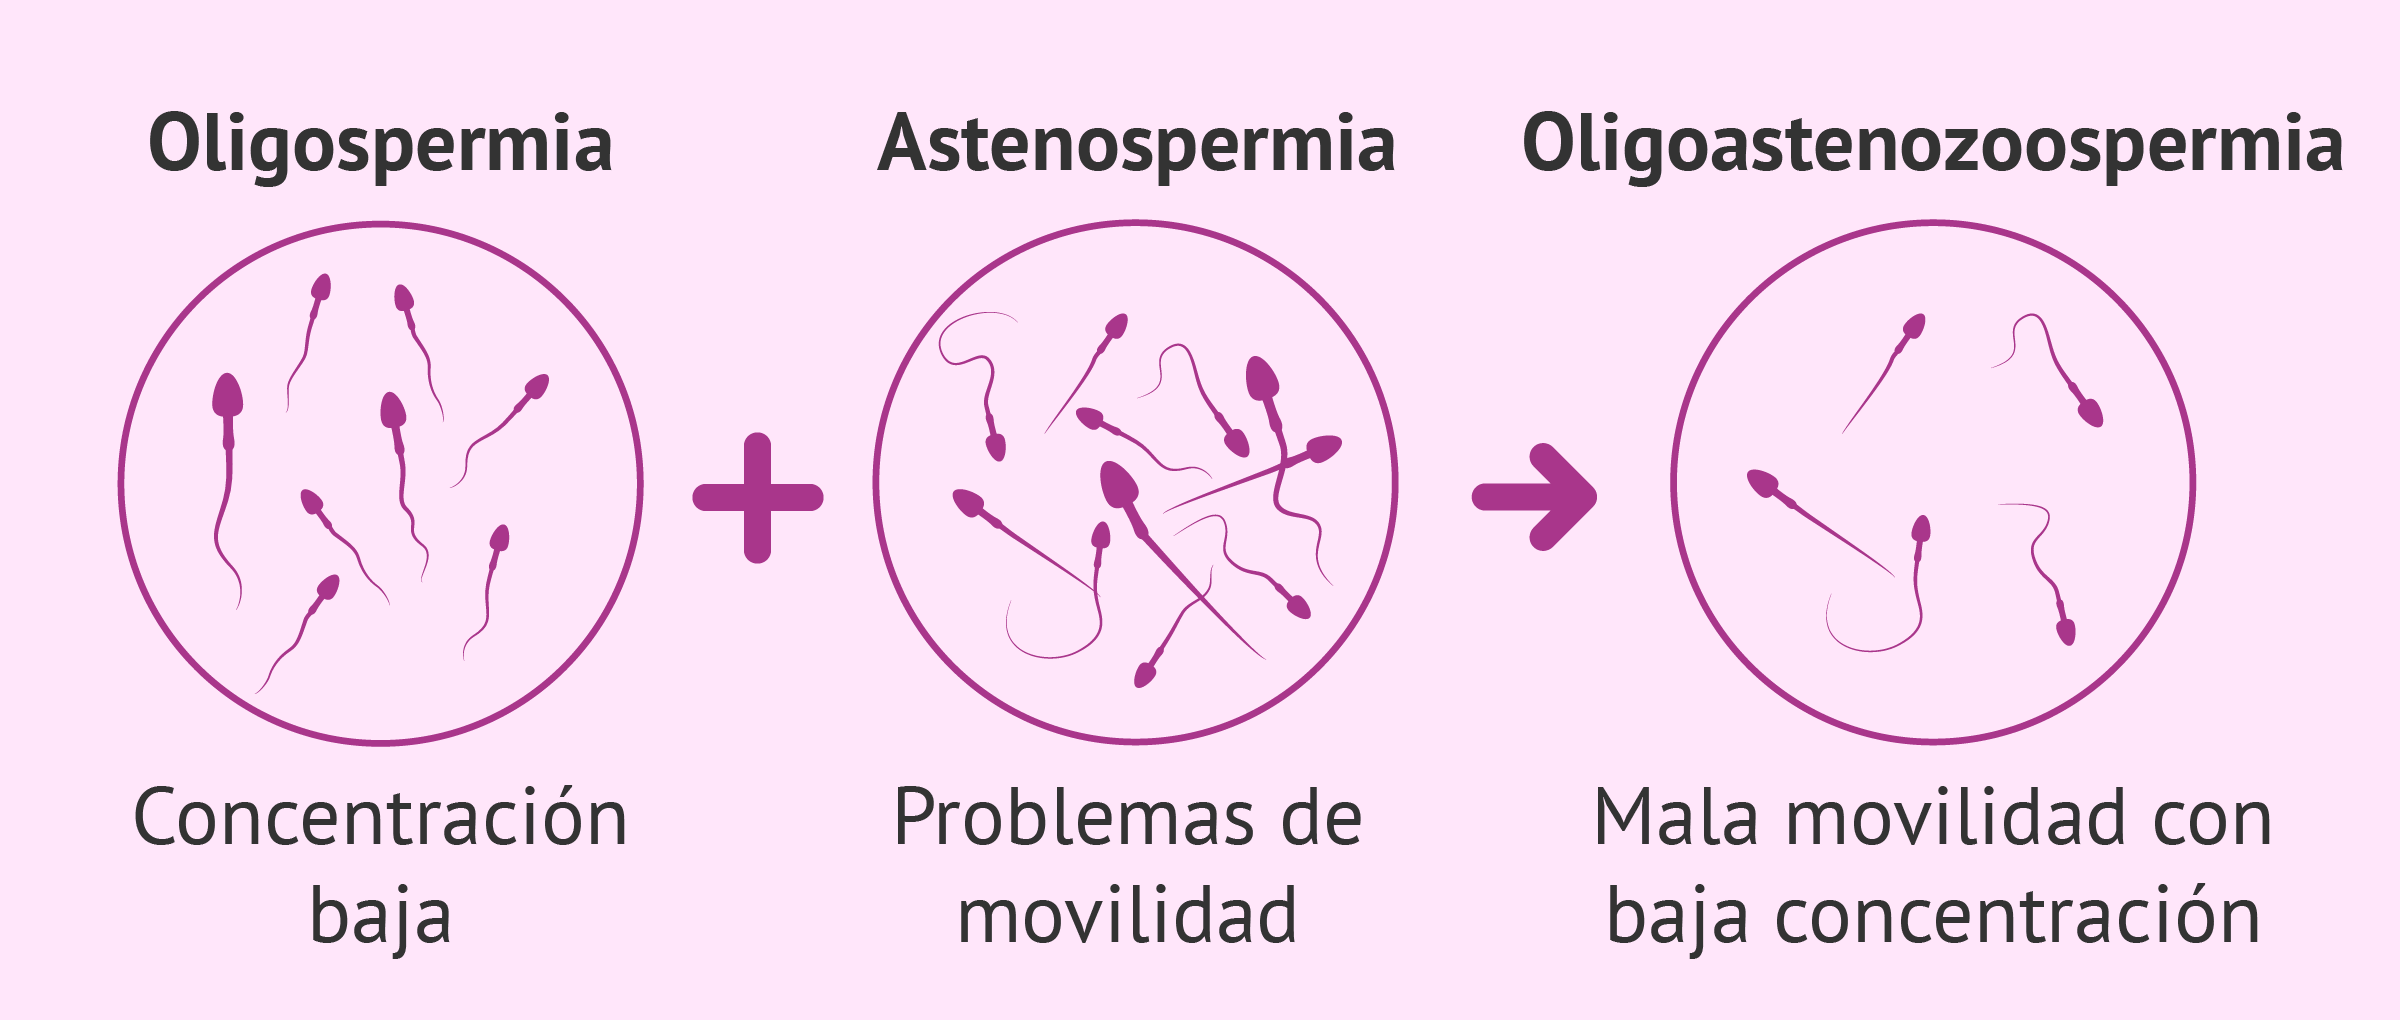 Diagnóstico de oligoastenozoospermia